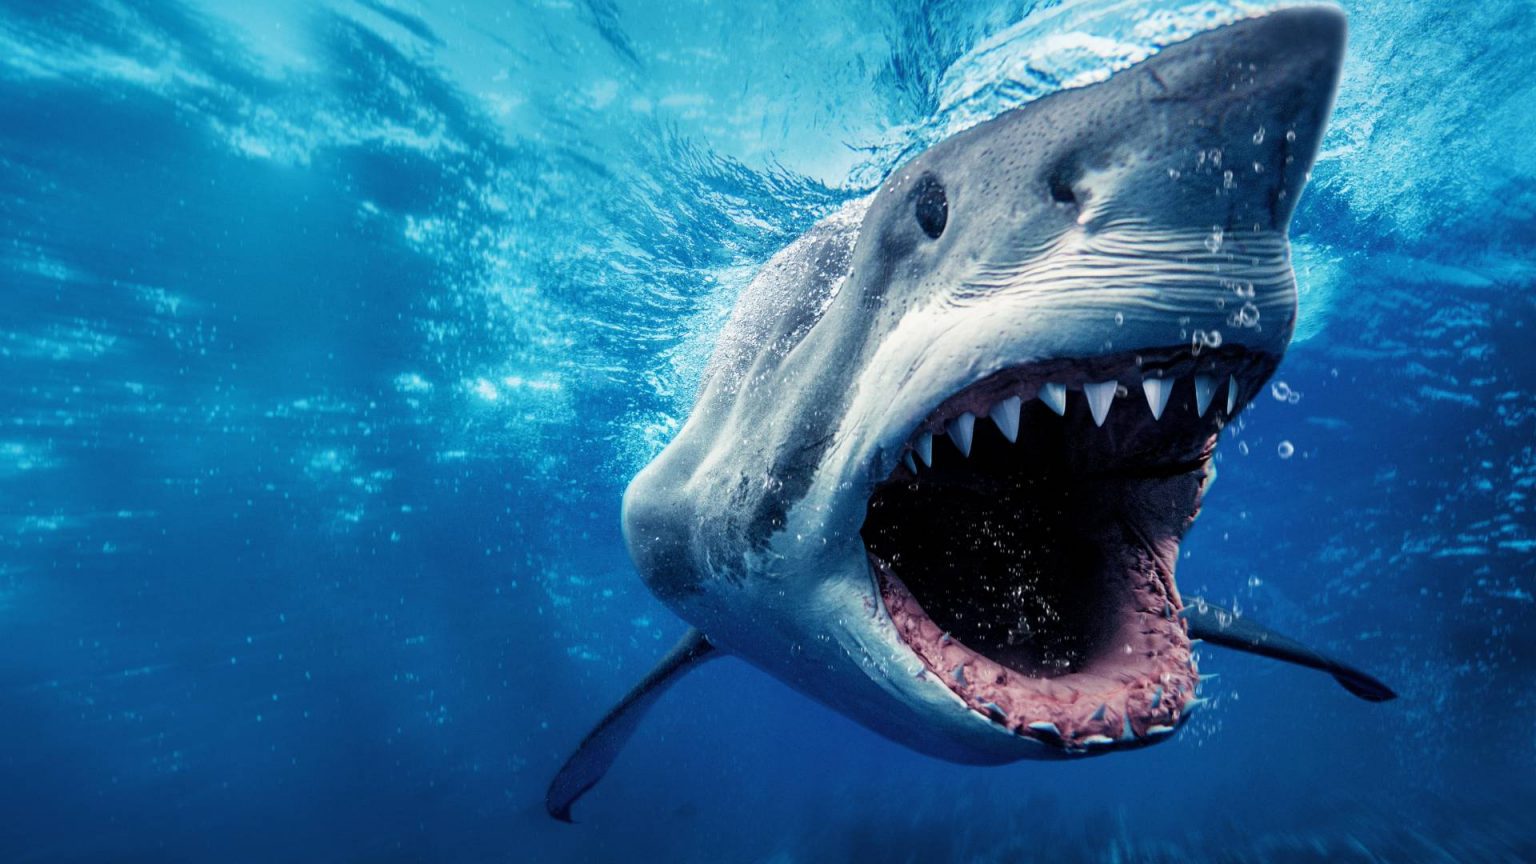 When Does Shark Week Start In 2022